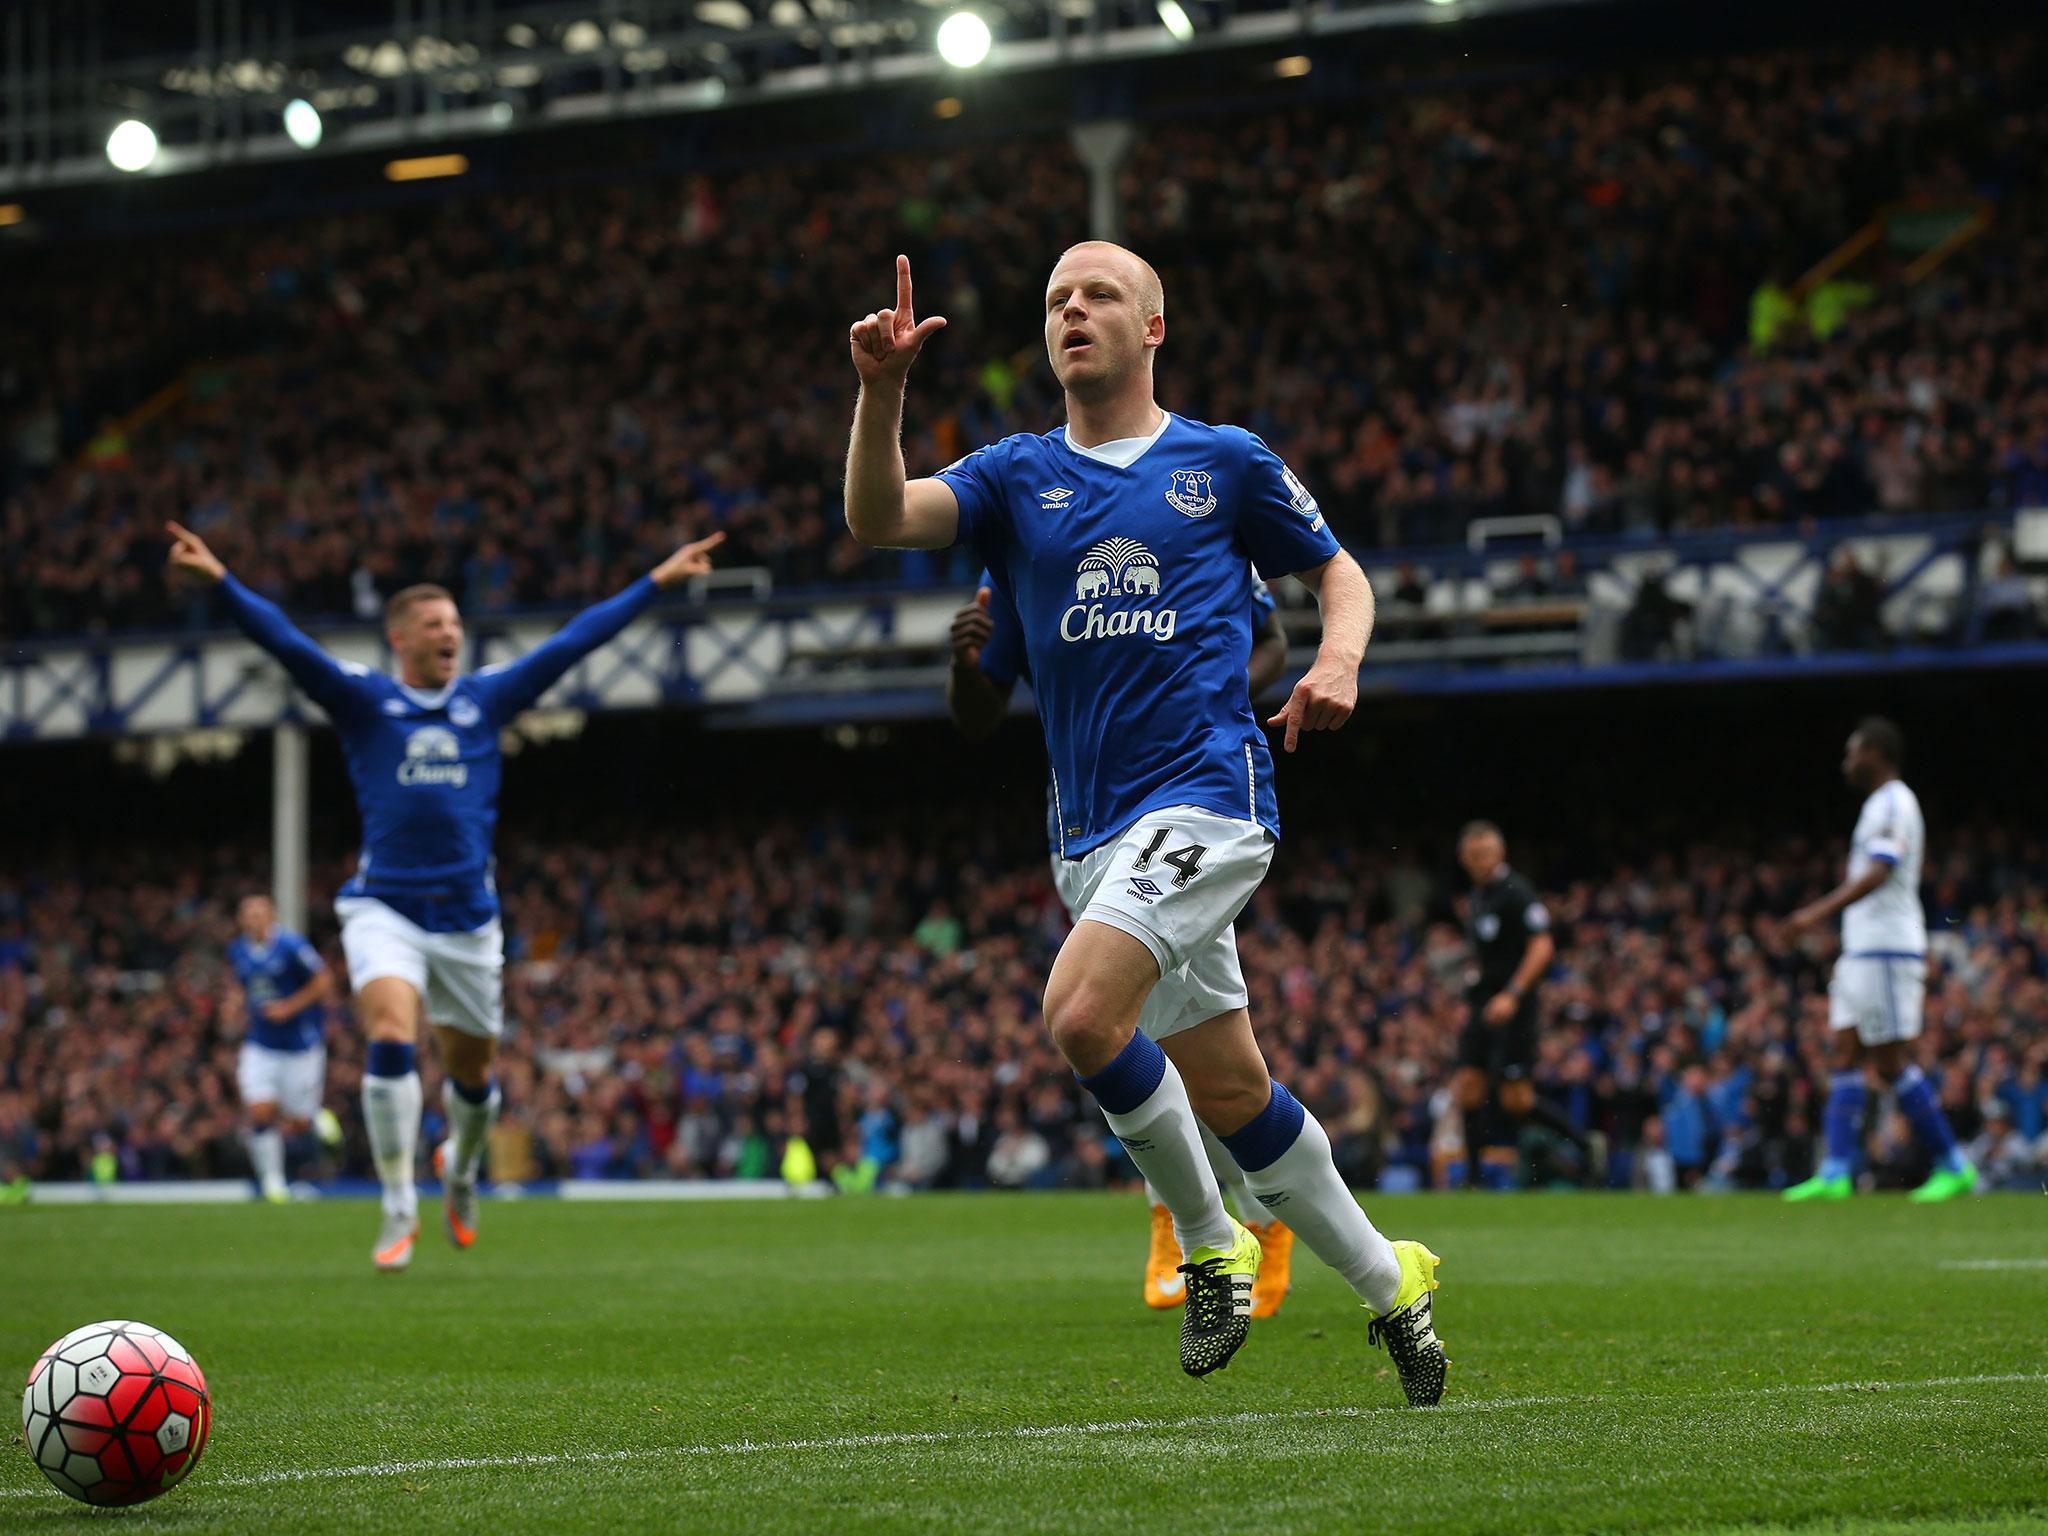 Steven Naismith celebrates scoring the opening goal for Everton